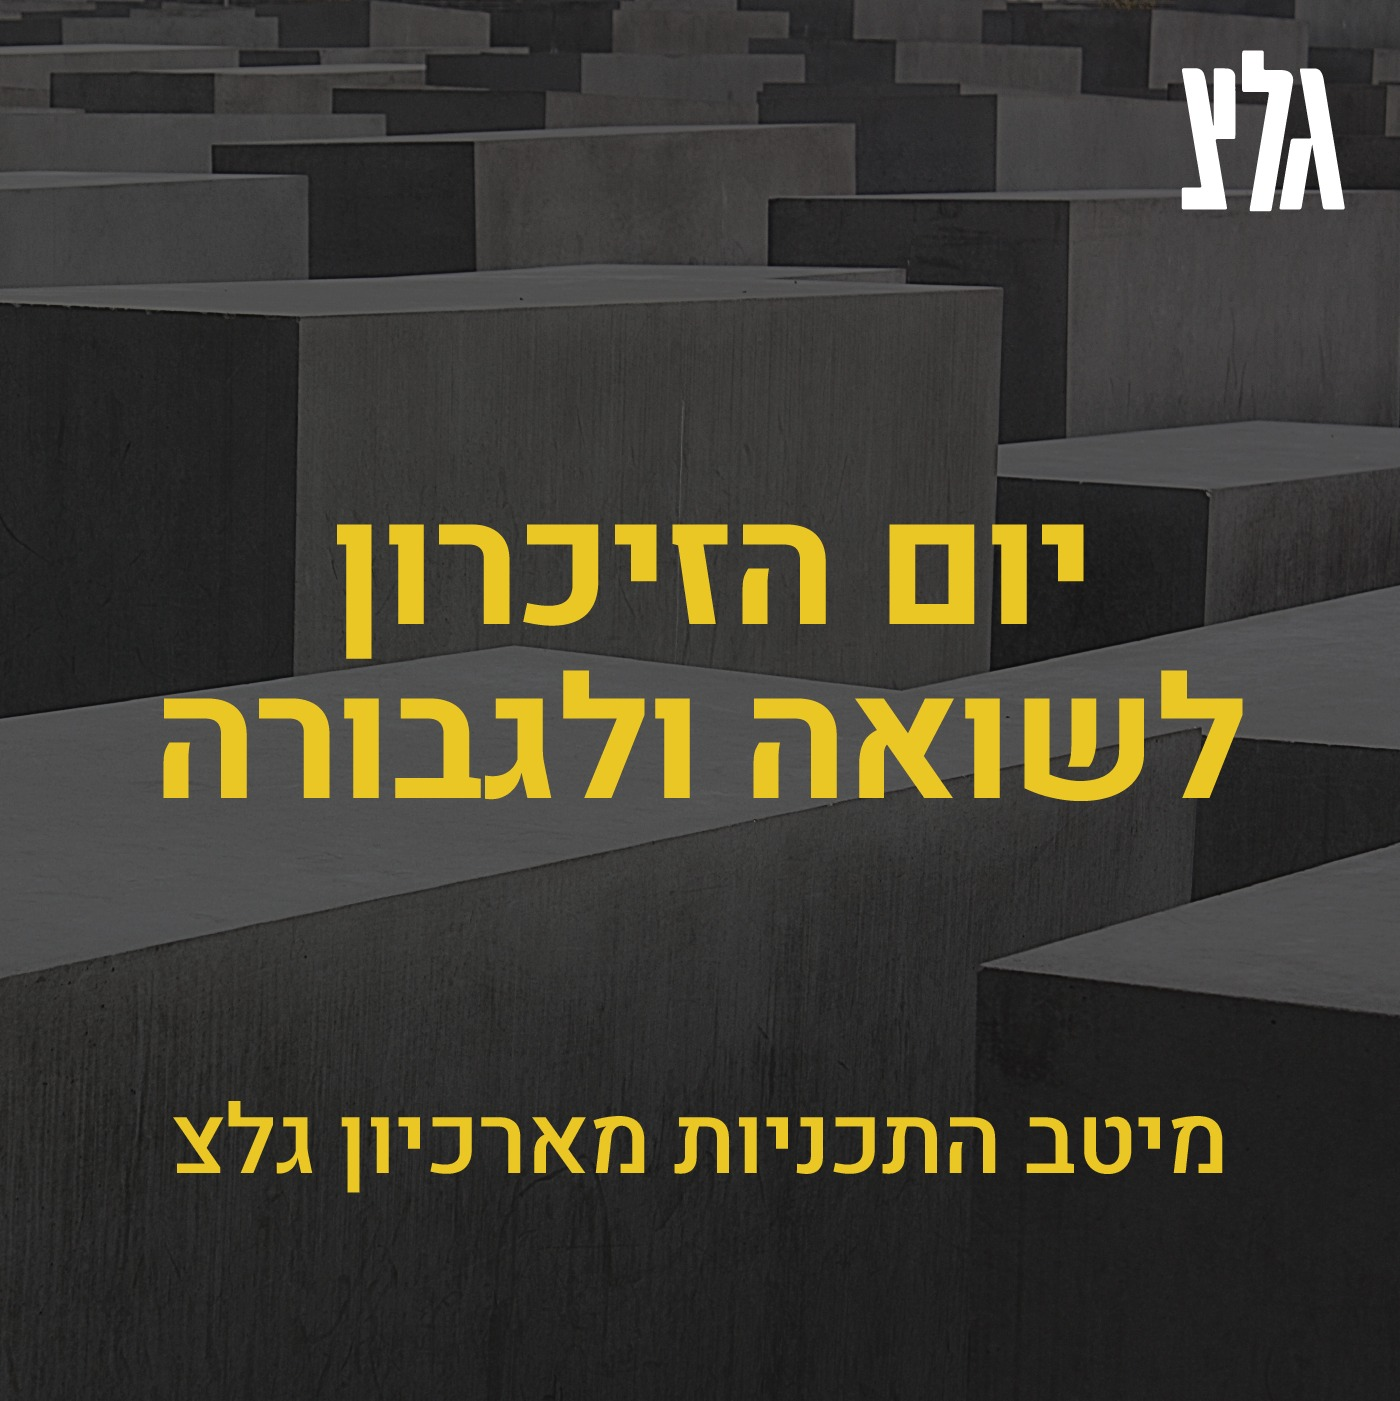 בכל דור ודור - הוראת השואה בישראל